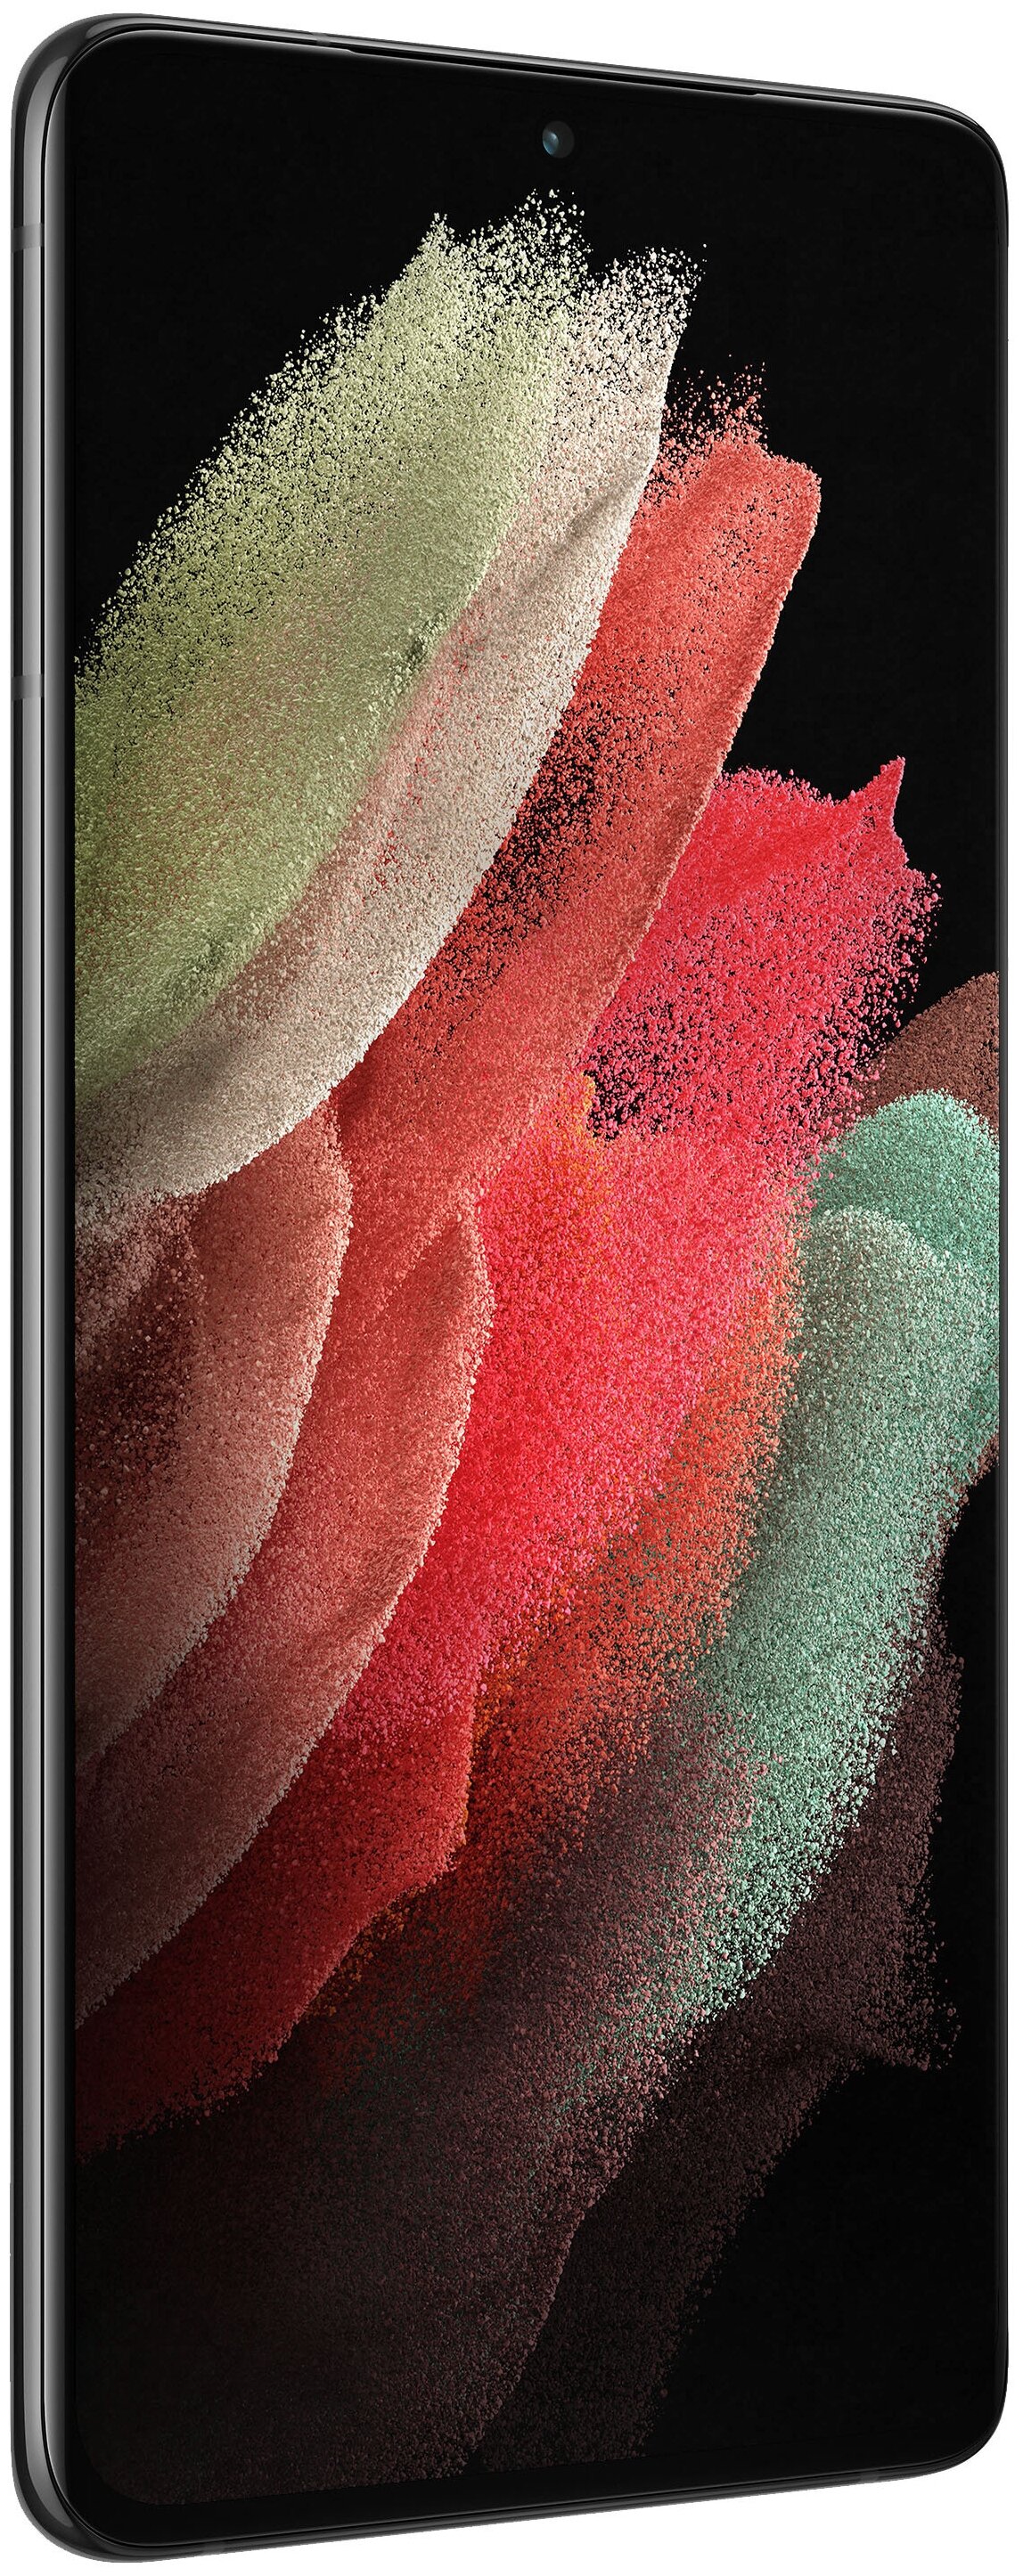 Samsung Galaxy S21 Ultra 5G 16/512GB - 4 камеры: 108 МП, 12 МП, 10 МП, 10 МП